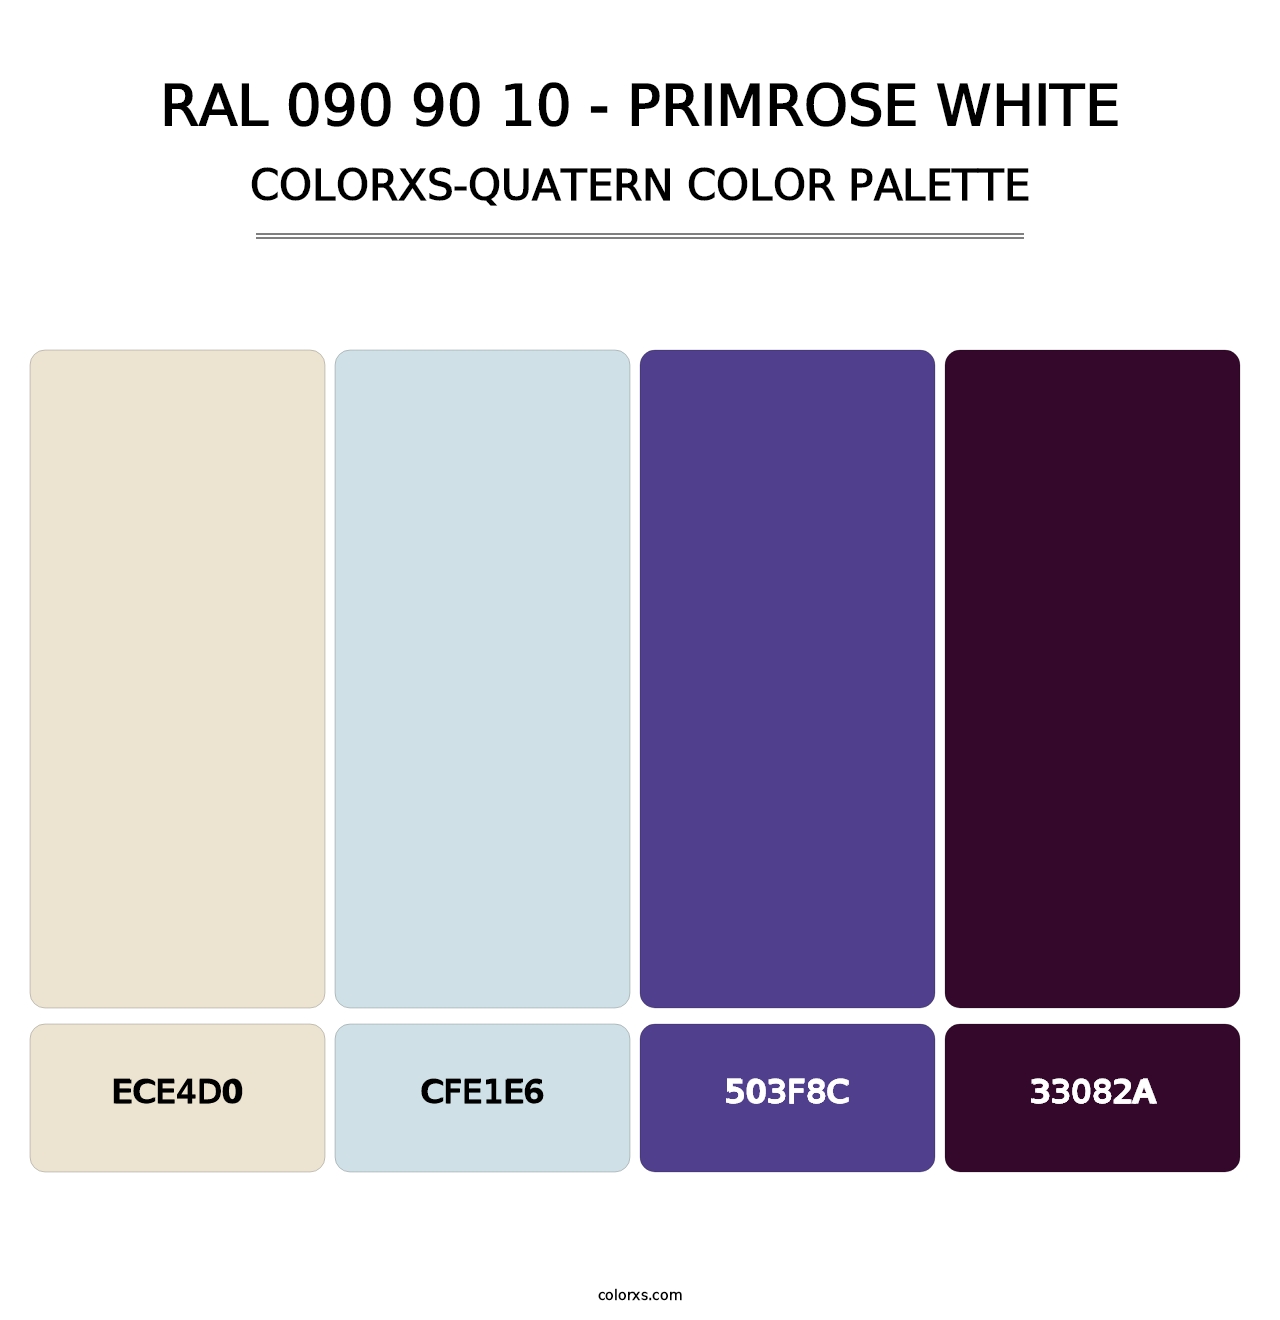 RAL 090 90 10 - Primrose White - Colorxs Quatern Palette